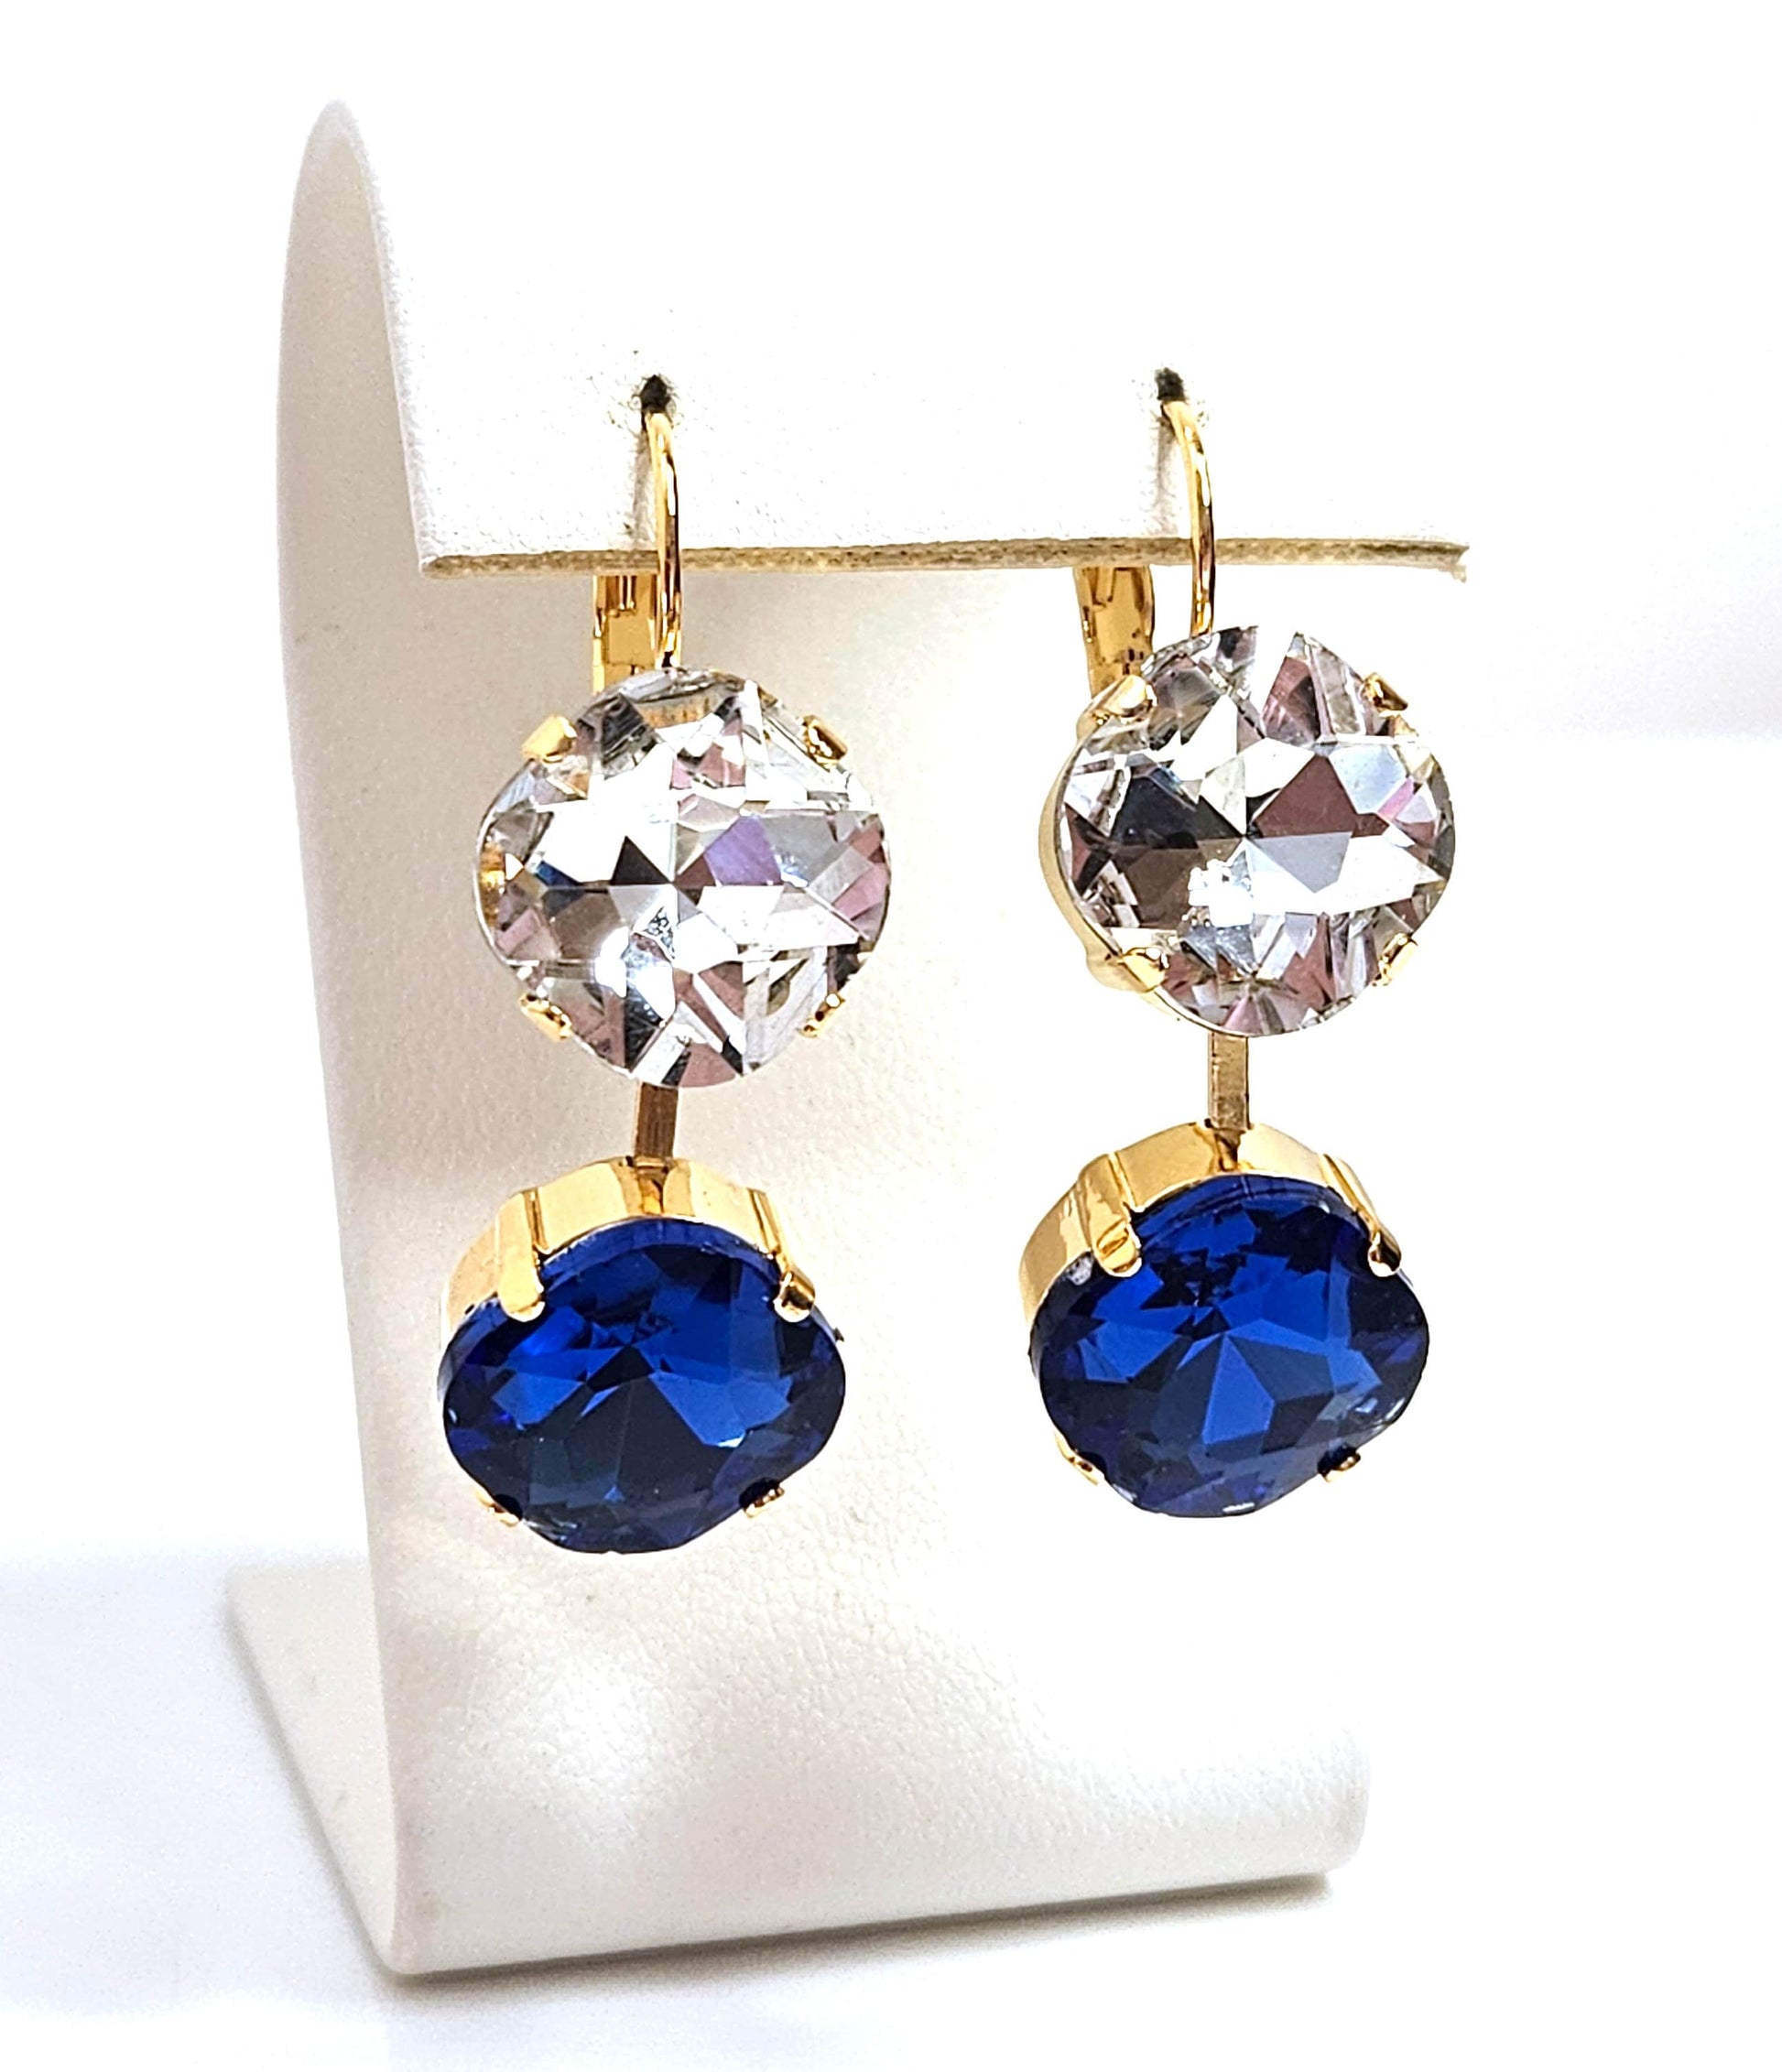 Sapphire Blue Crystal Earrings, Crystal Drops, Dark Blue Clear Dangles, Gold Plated Earrings, Statement Earrings For Women